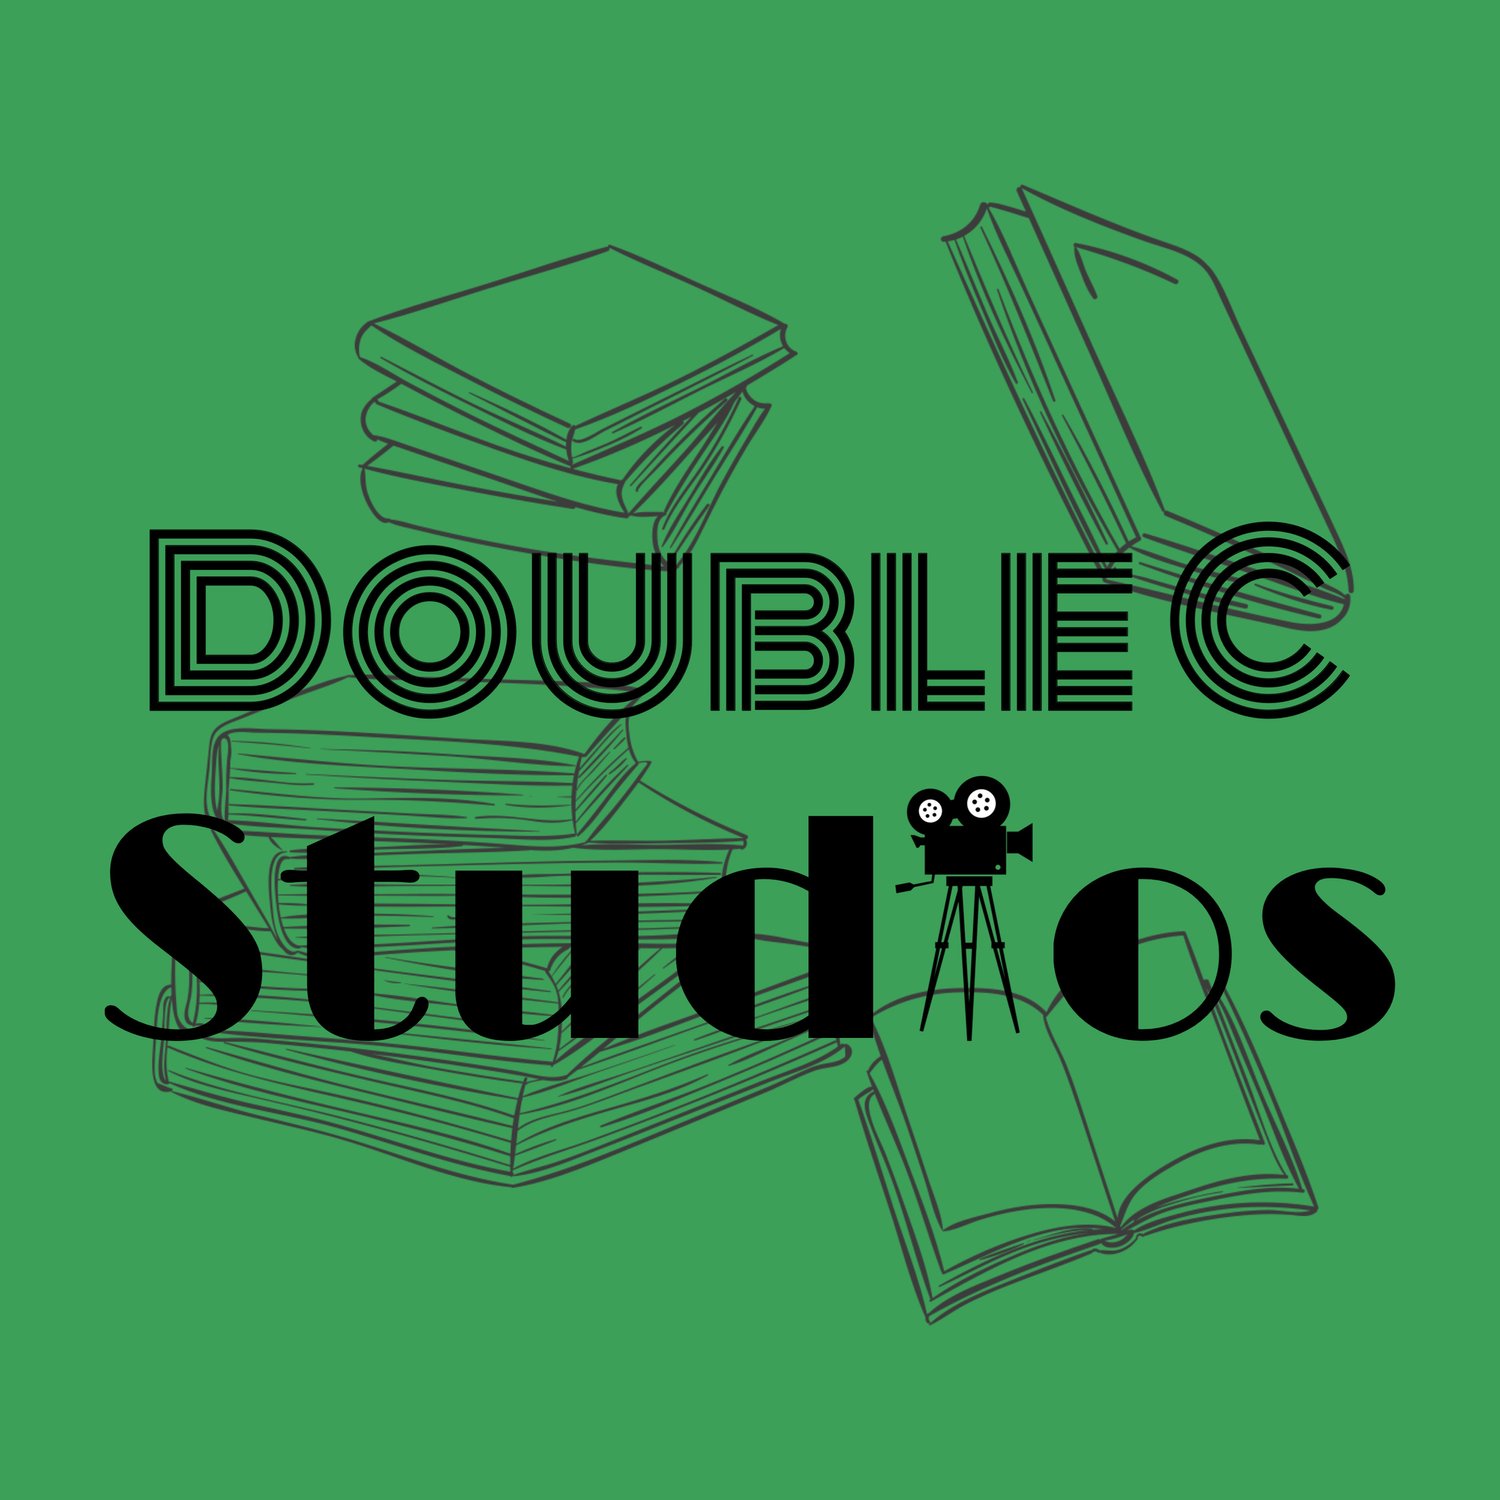 Double C Studios